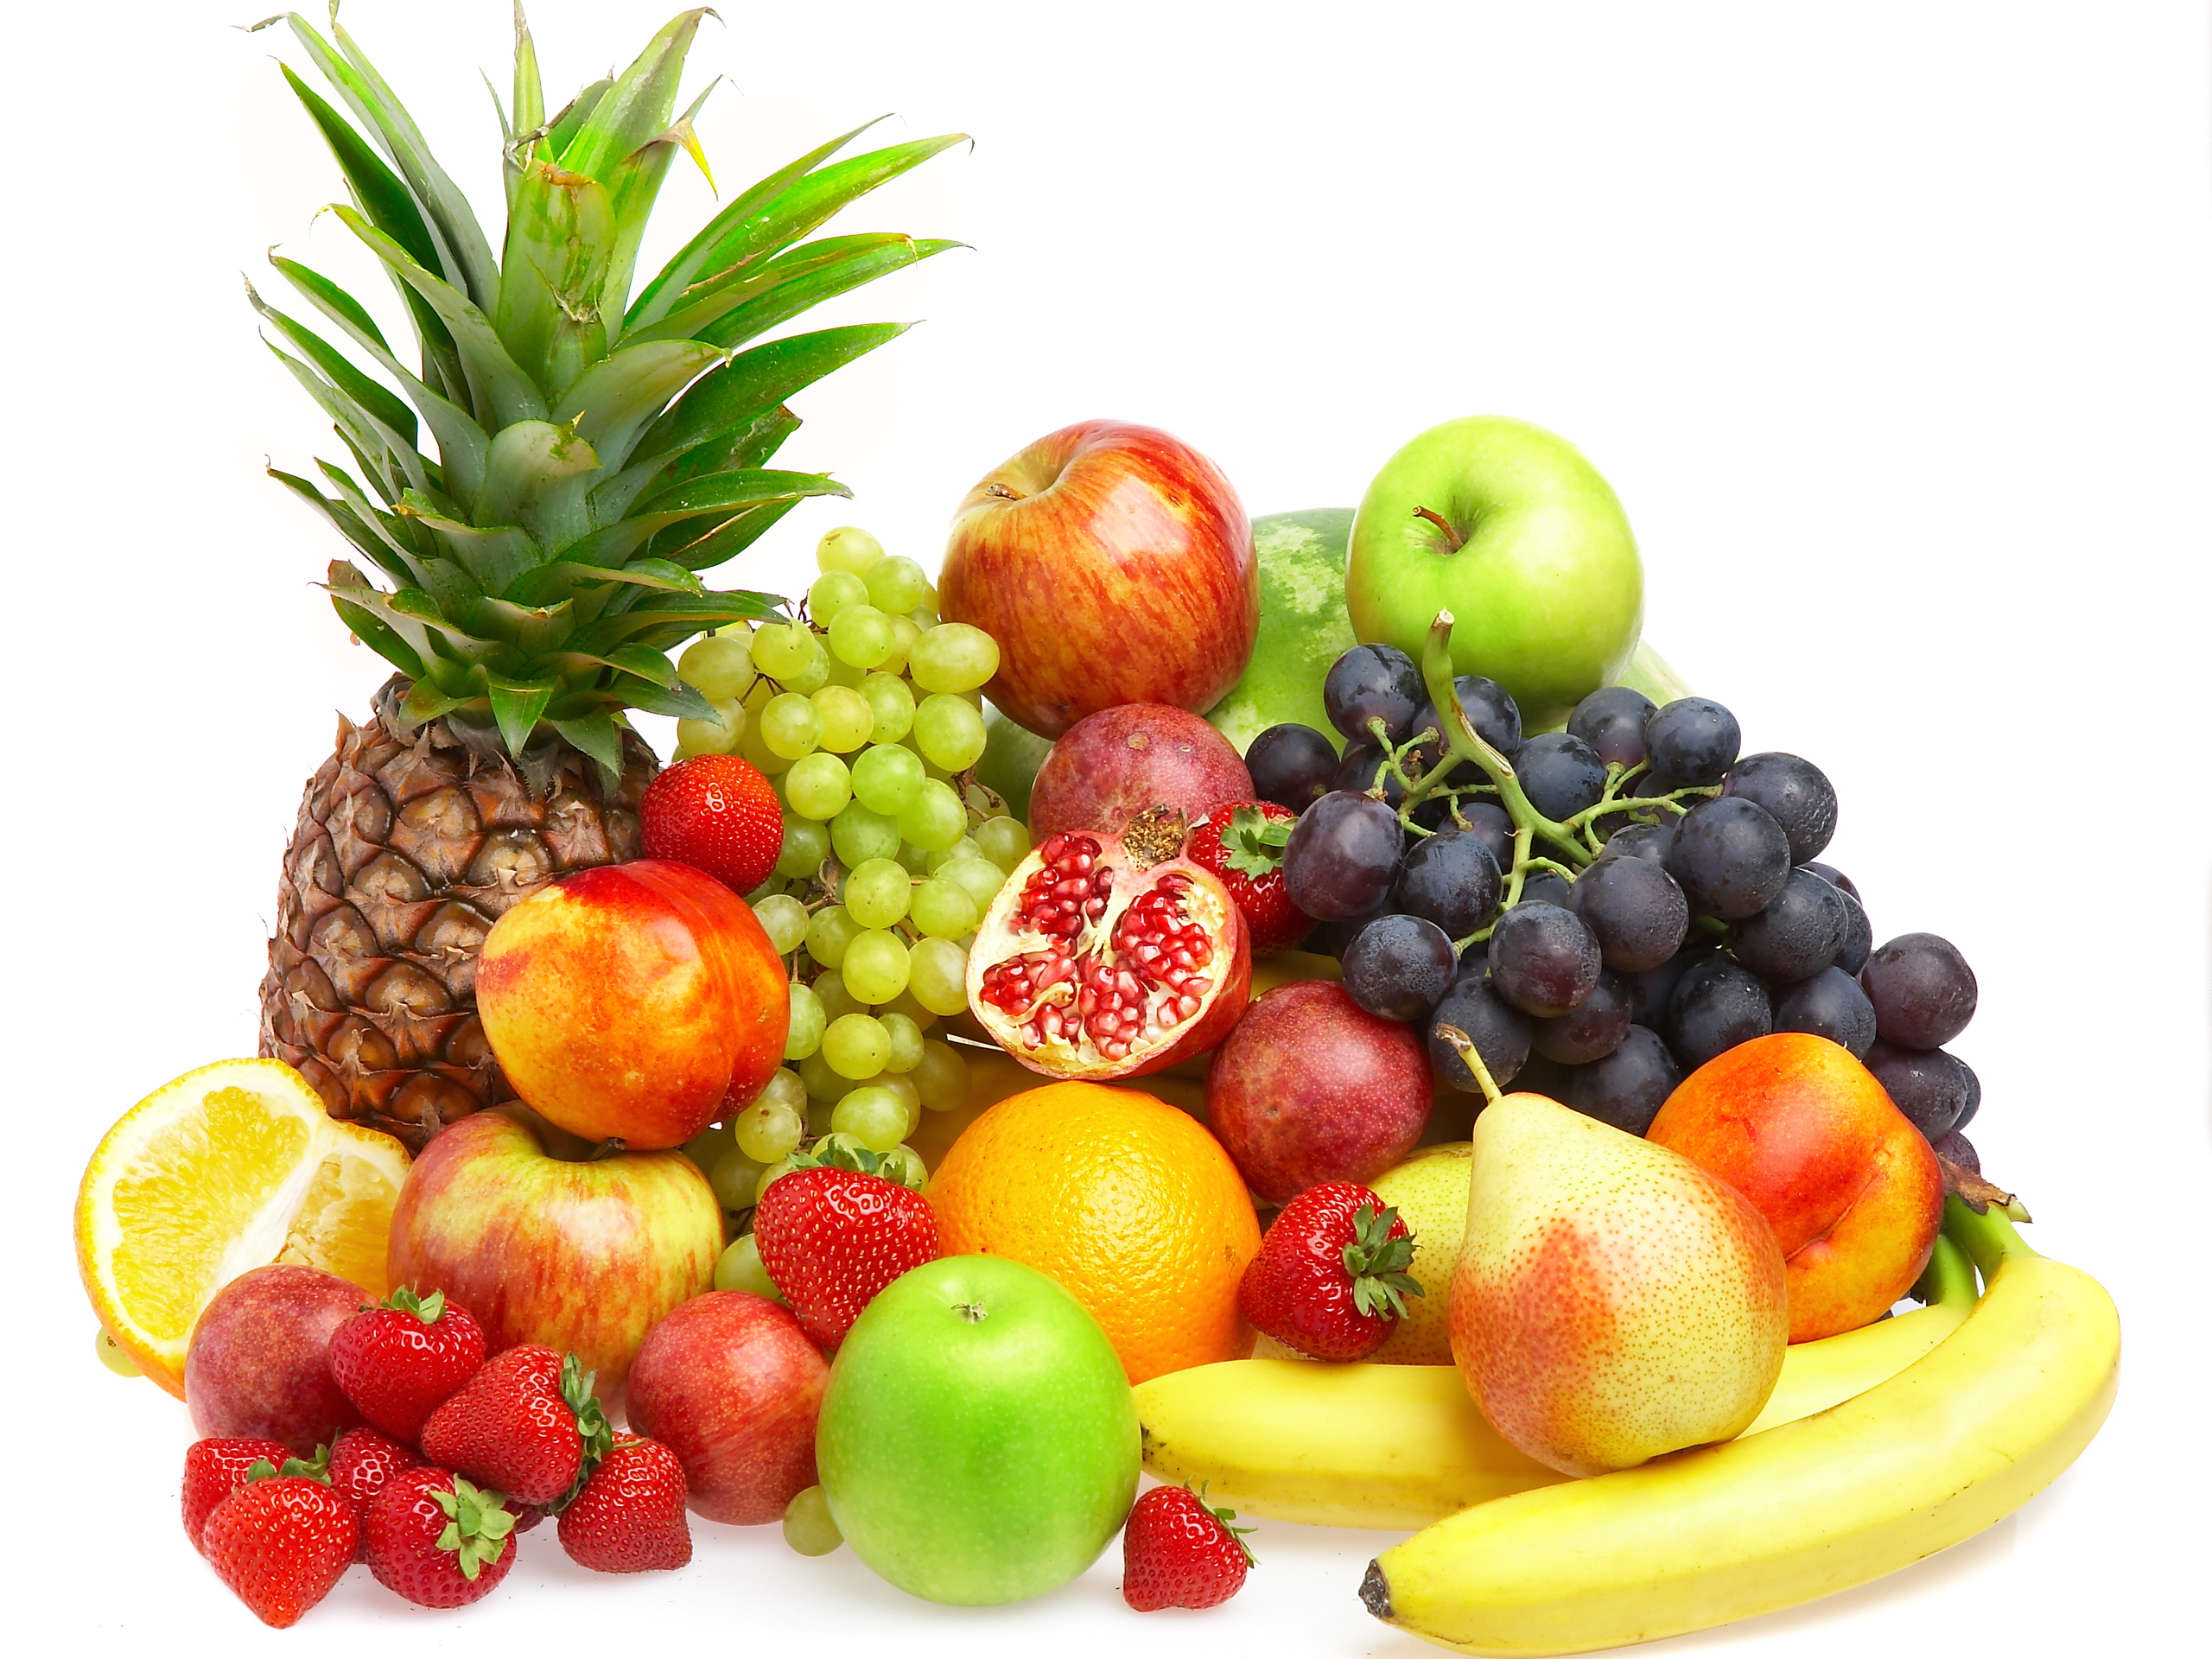 Free photo: Fresh fruits, Crop, Diet